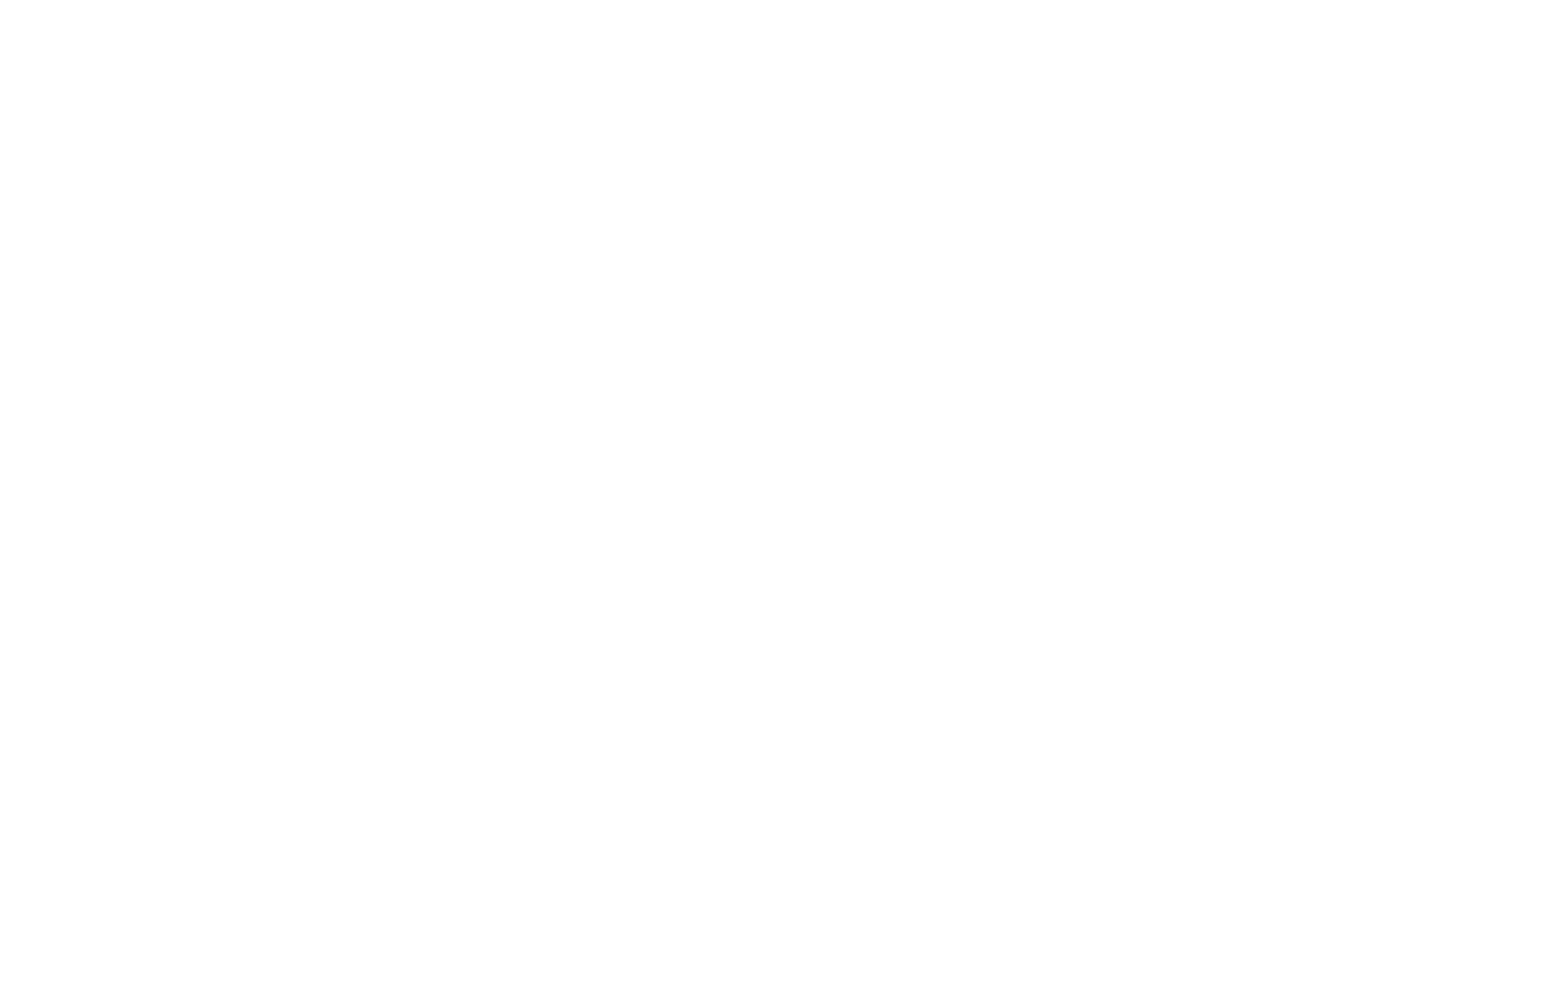 Community Bank System logo for dark backgrounds (transparent PNG)